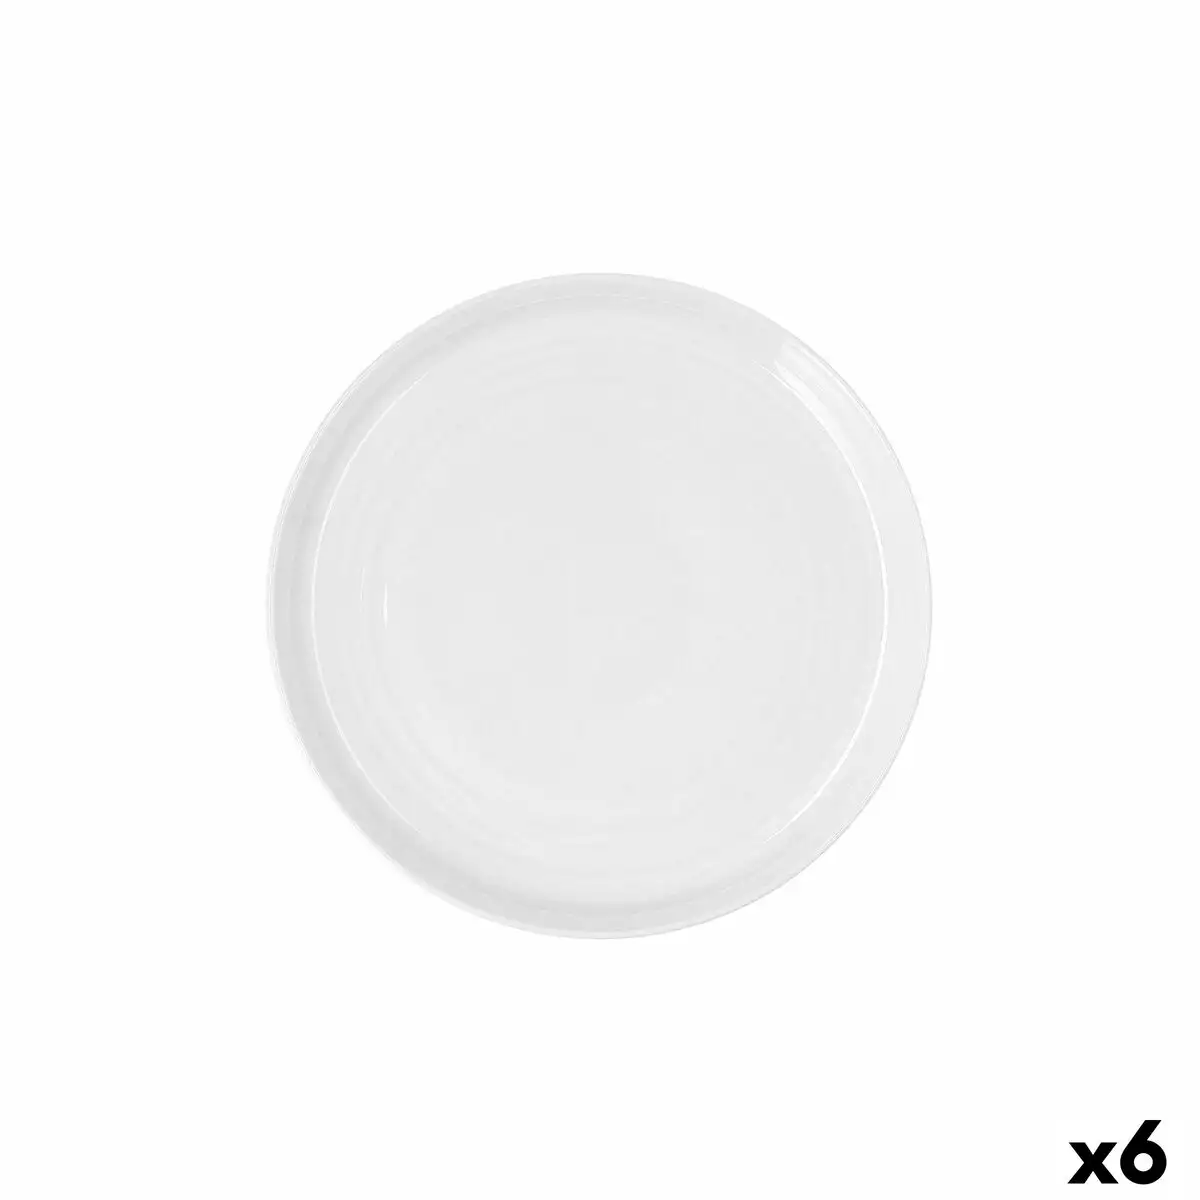 Assiette plate ariane artisan ceramique blanc o 27 cm 6 unites _8982. Plongez dans l'Univers de DIAYTAR SENEGAL - Où la Qualité et la Diversité se rencontrent. Parcourez nos rayons virtuels pour trouver des produits répondant à tous les besoins, du confort de votre foyer.